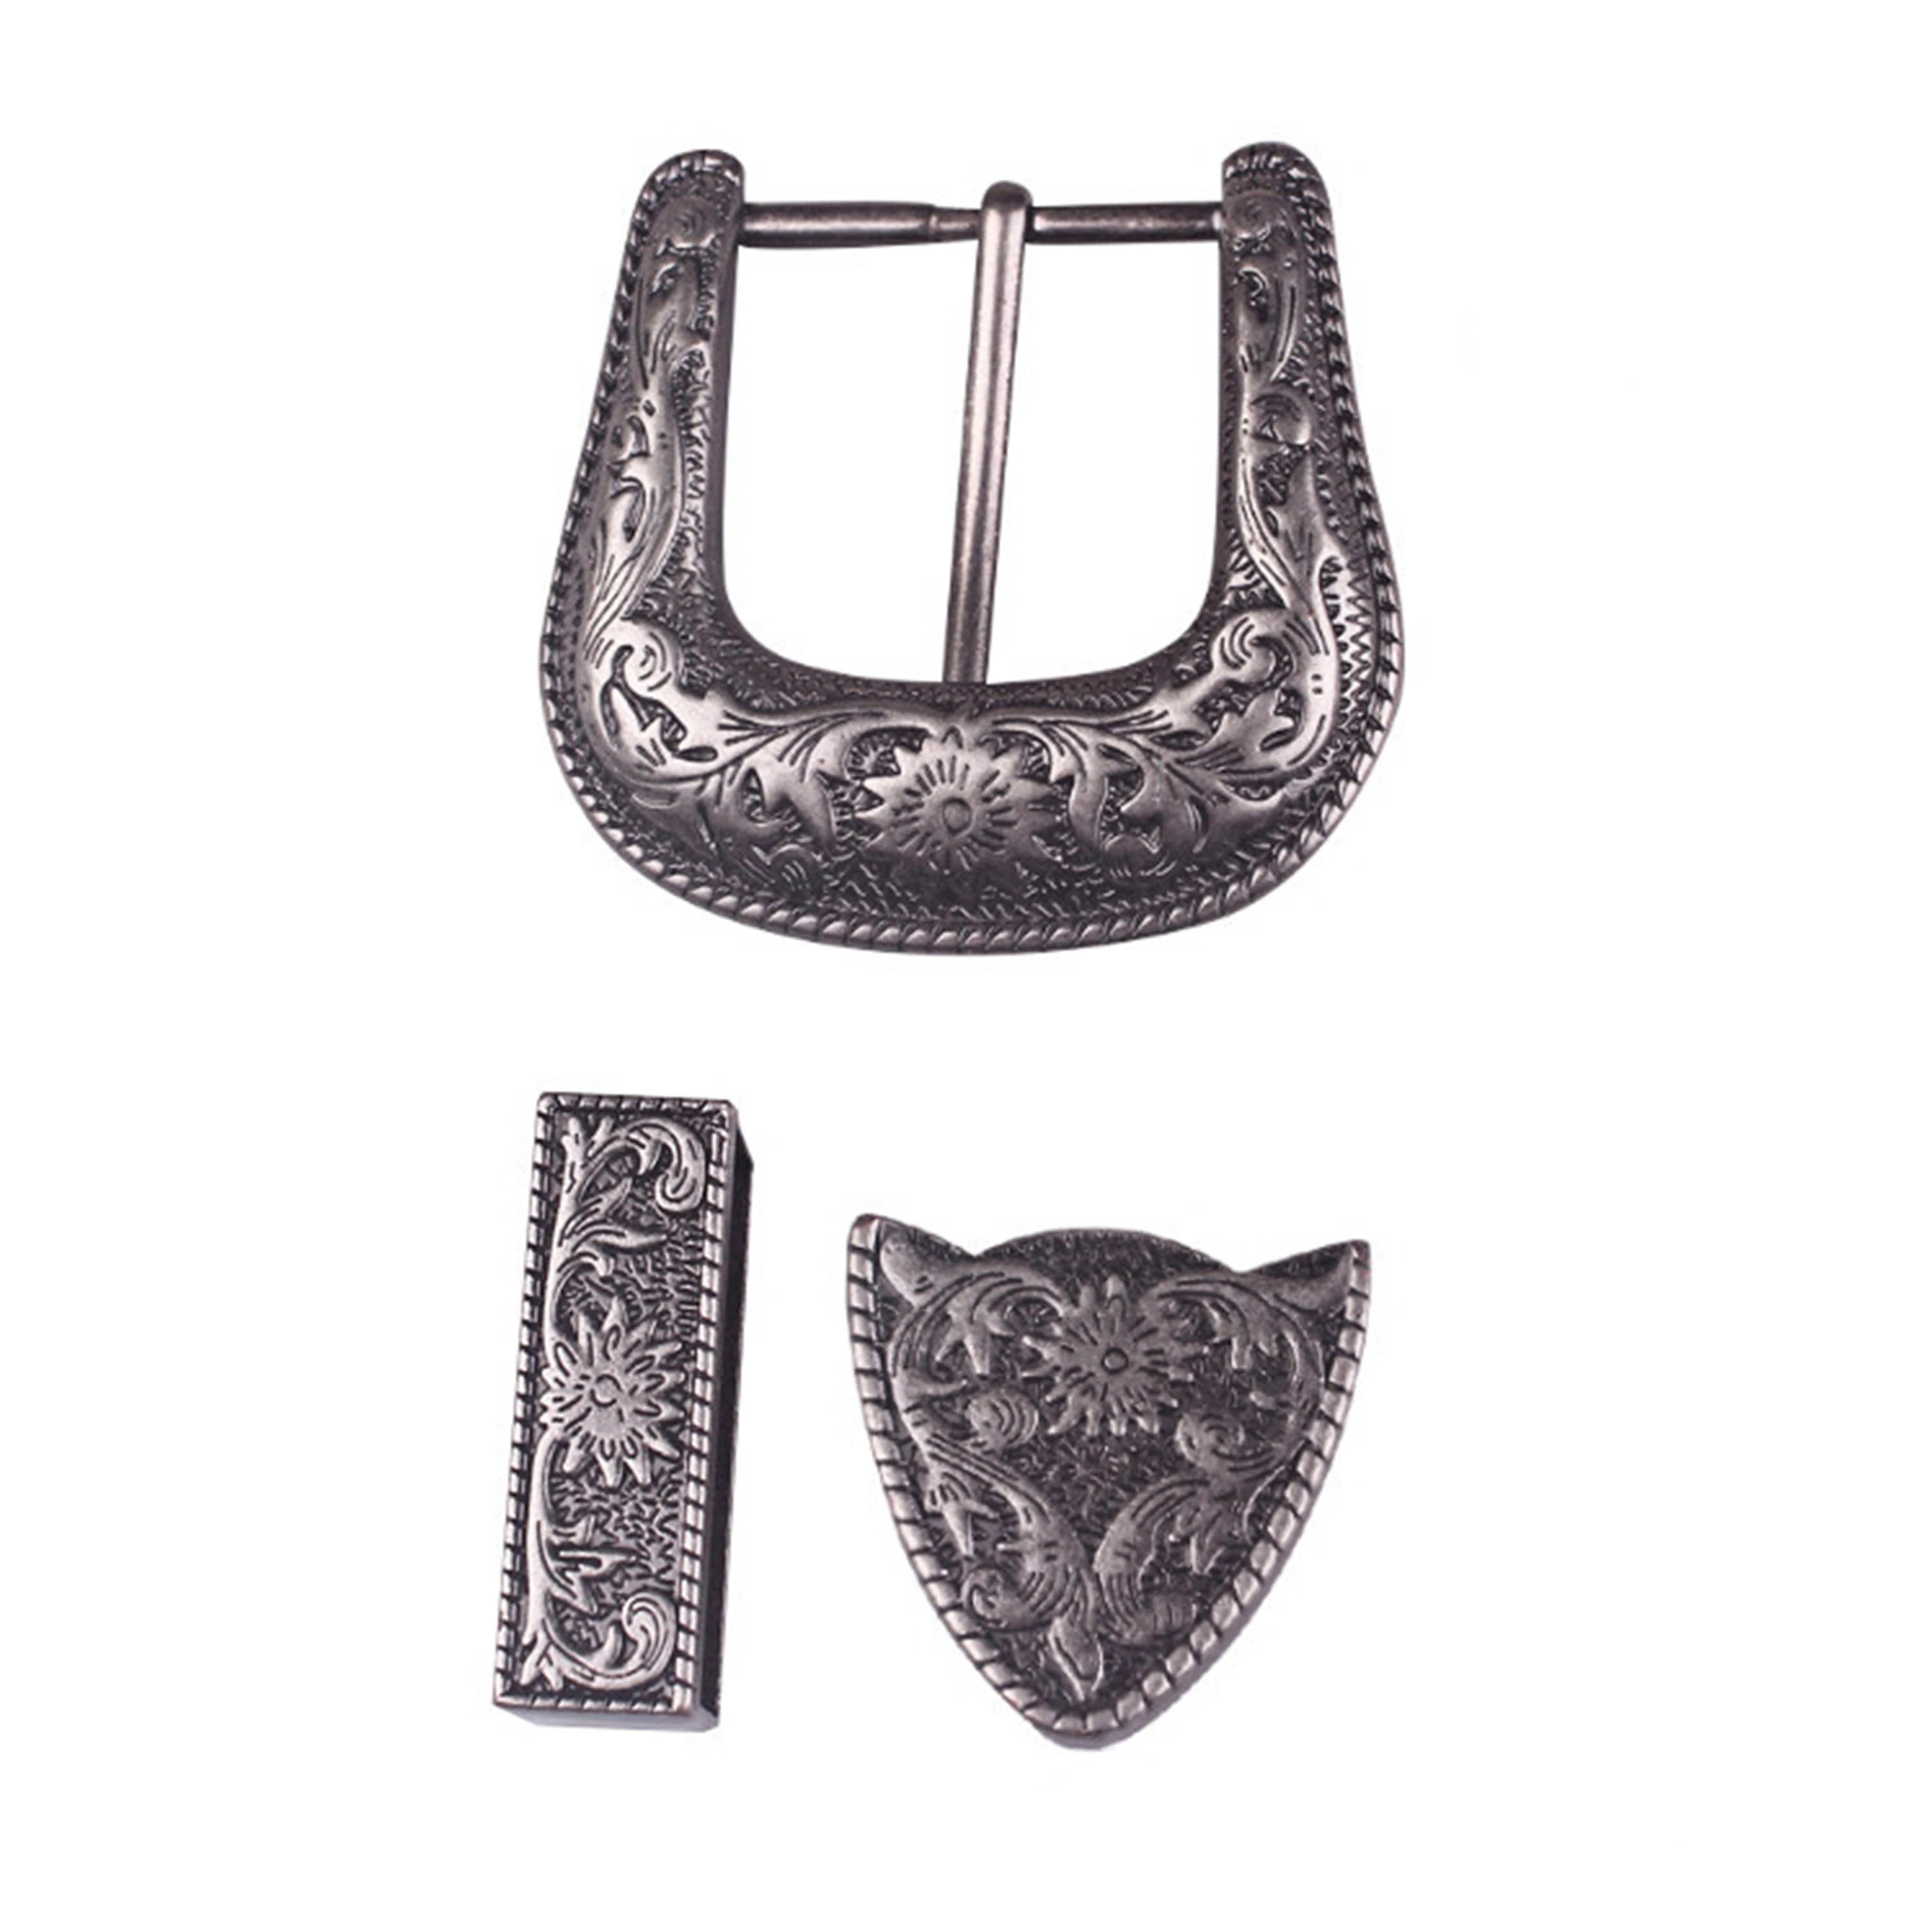 3pcs parts/set vintage carve pattern metal handmake DIY leather craft belt buckle set antique